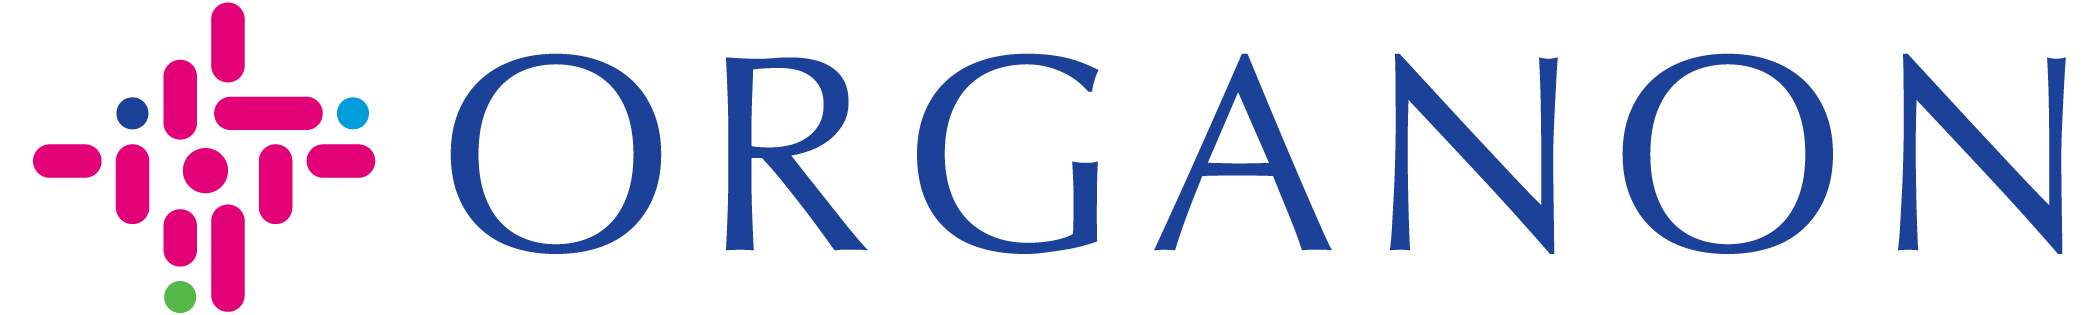 Organon_Digital_FullColor_Logo